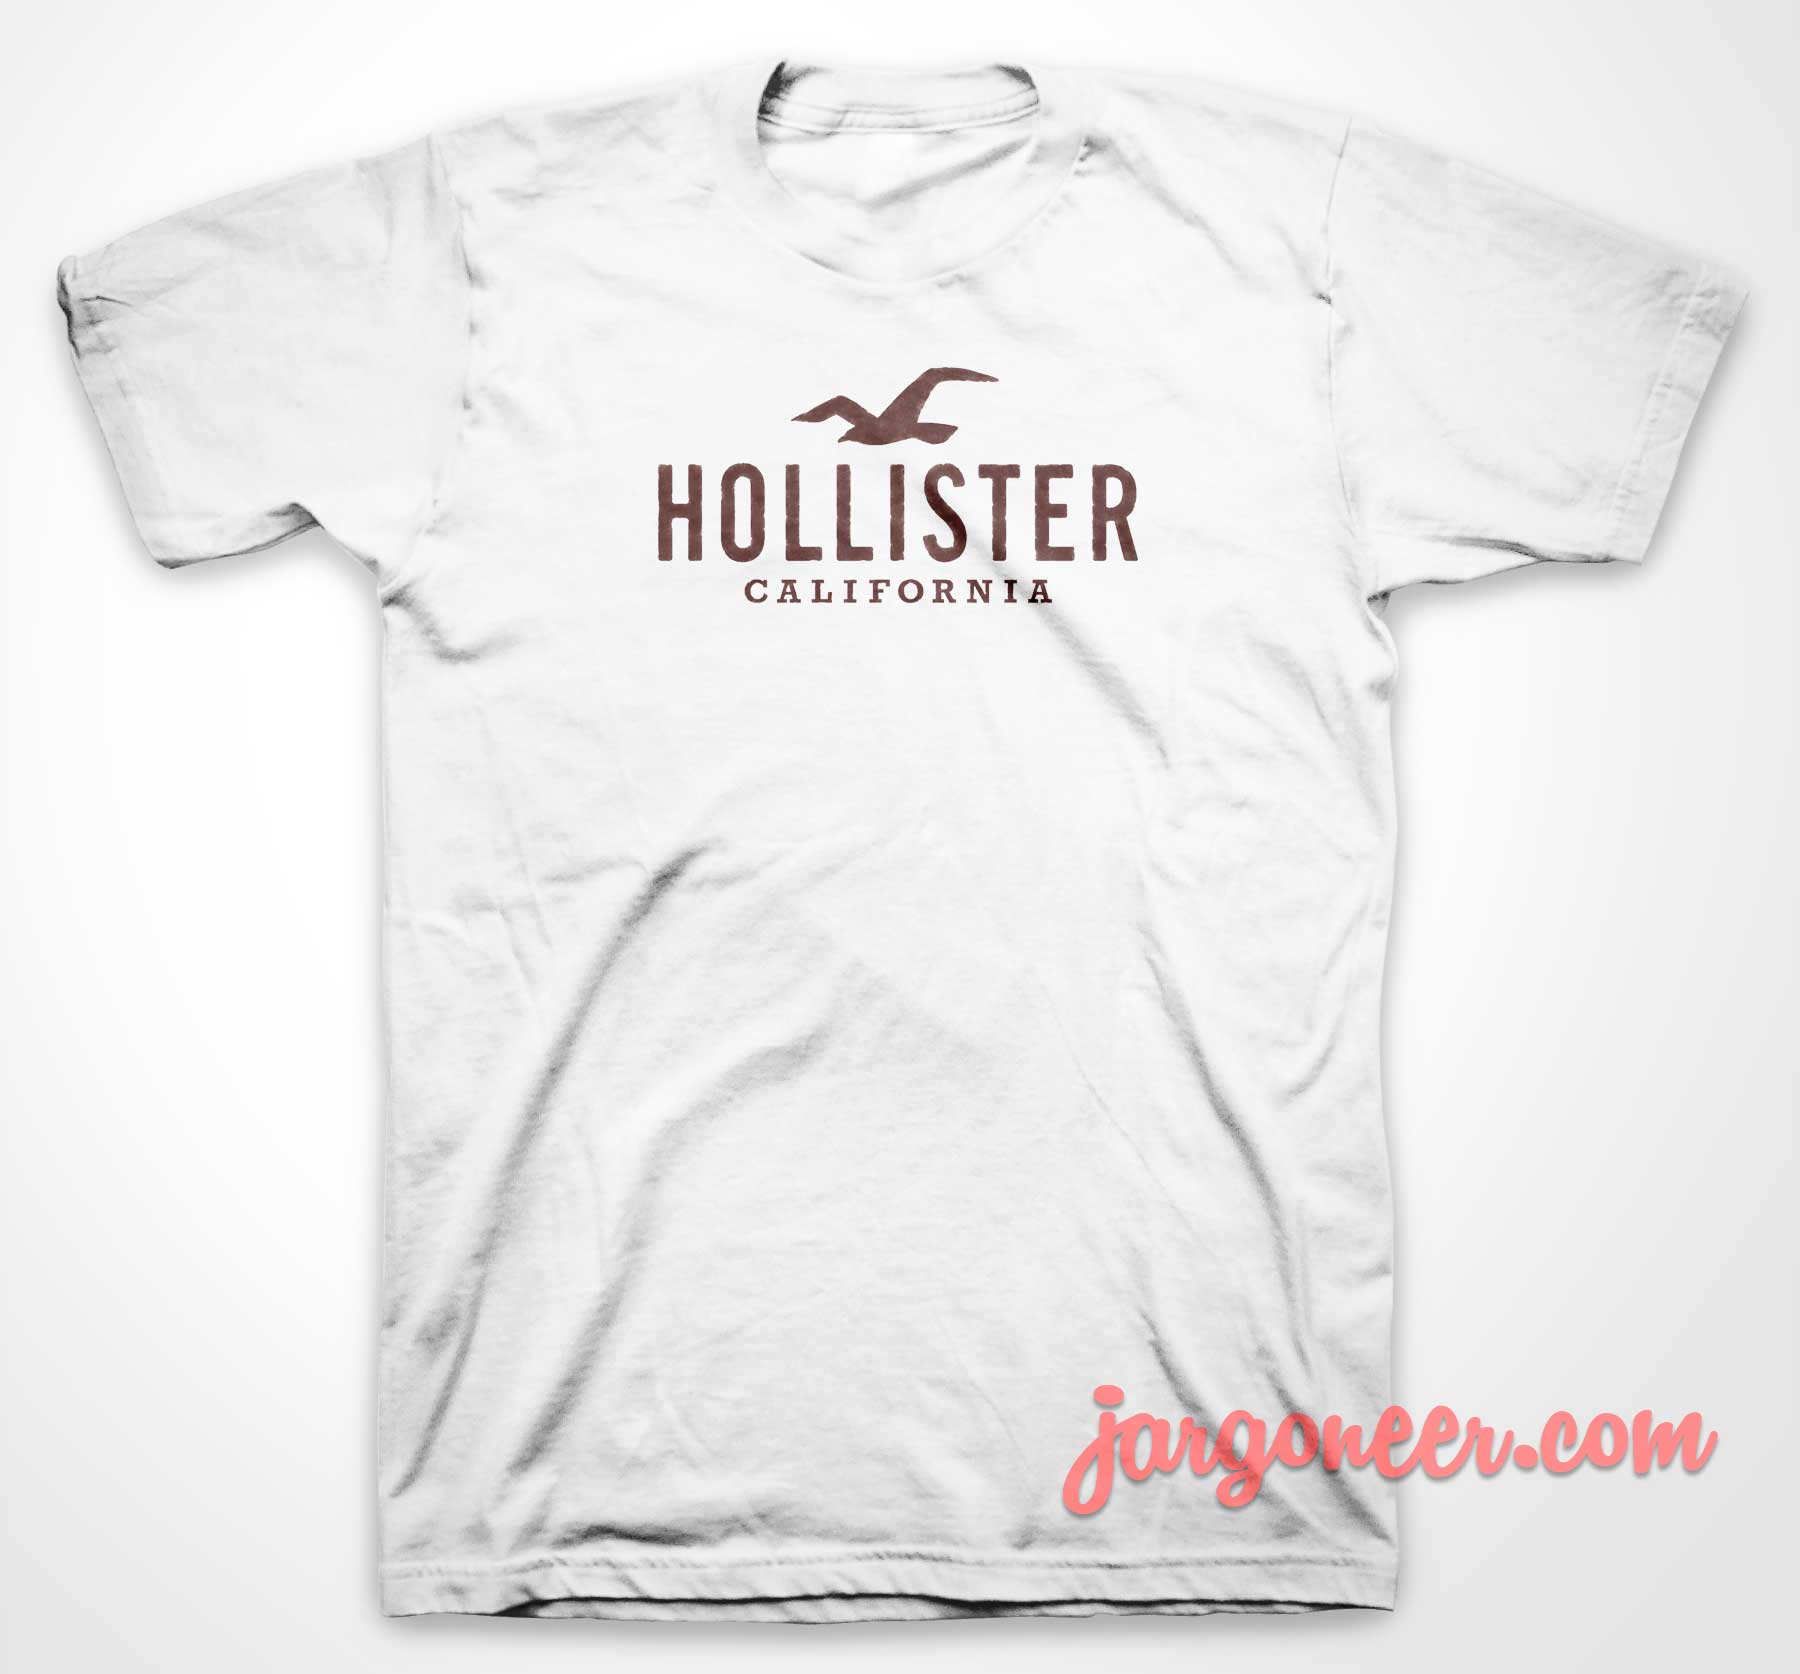 Hollister California 3 - Shop Unique Graphic Cool Shirt Designs